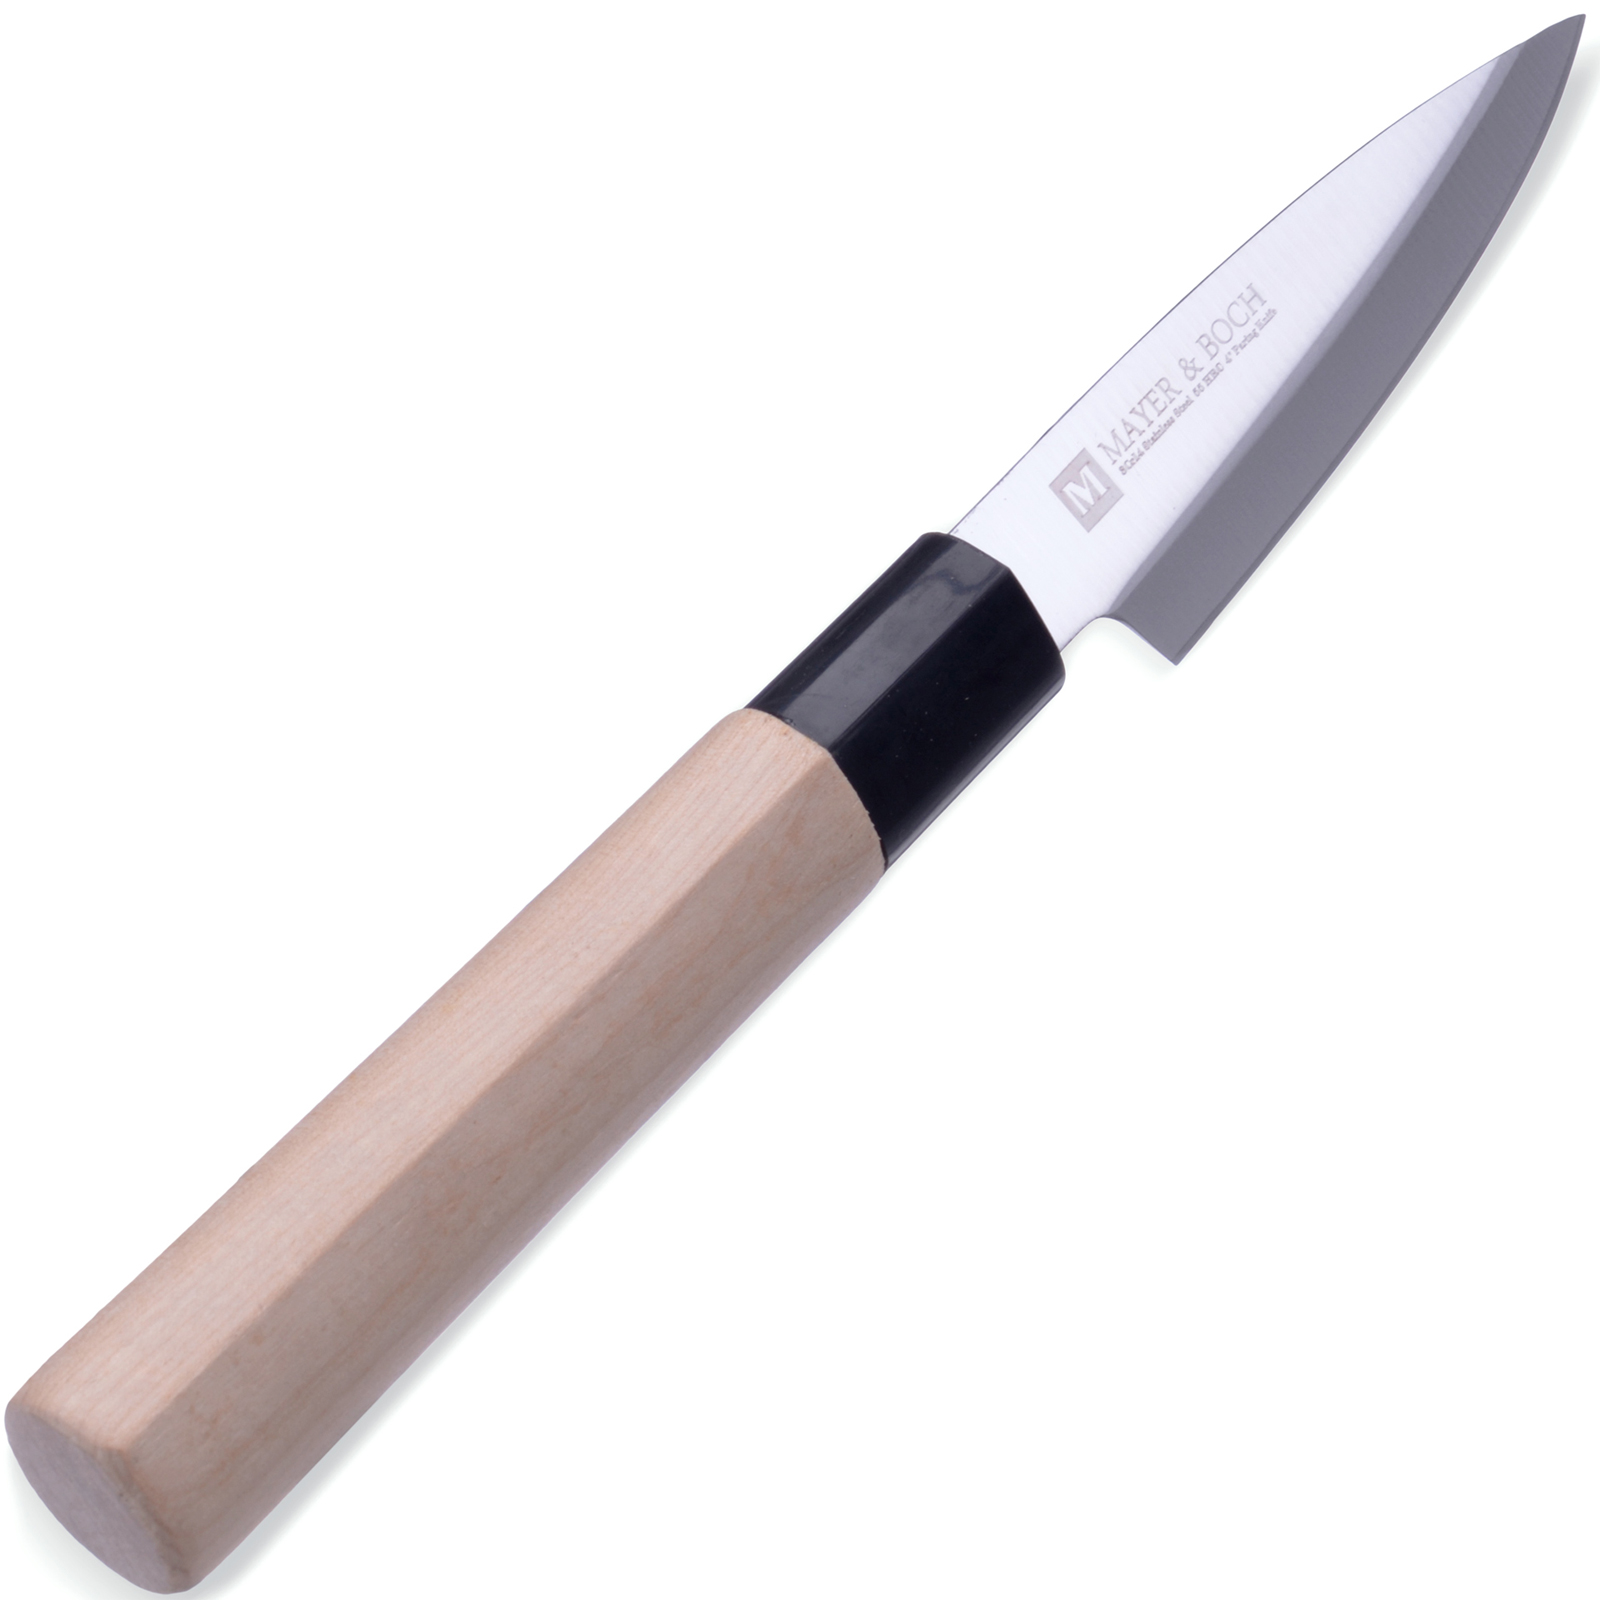 фото Нож универсальный Mayer & Boch Kyoto, цвет: бежевый, серебристый, длина лезвия 10,5 см